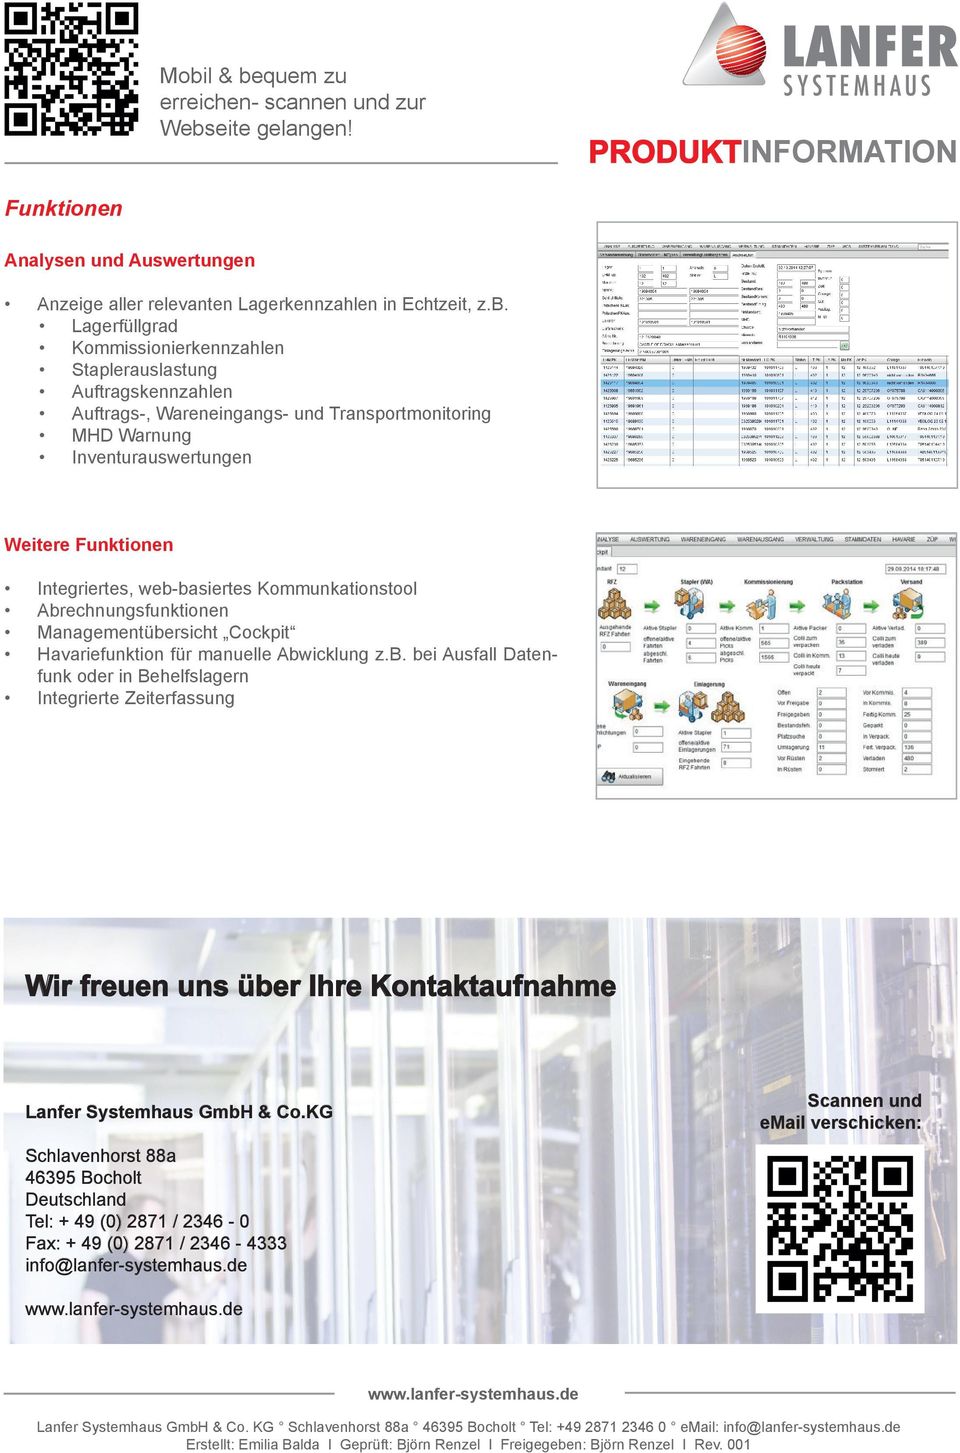 Integriertes, web-basiertes Kommunkationstool Abrechnungsfunktionen Managementübersicht Cockpit Havariefunktion für manuelle Abwicklung z.b. bei Ausfall Datenfunk oder in Behelfslagern Integrierte Zeiterfassung Wir freuen uns über Ihre Kontaktaufnahme Lanfer Systemhaus GmbH & Co.